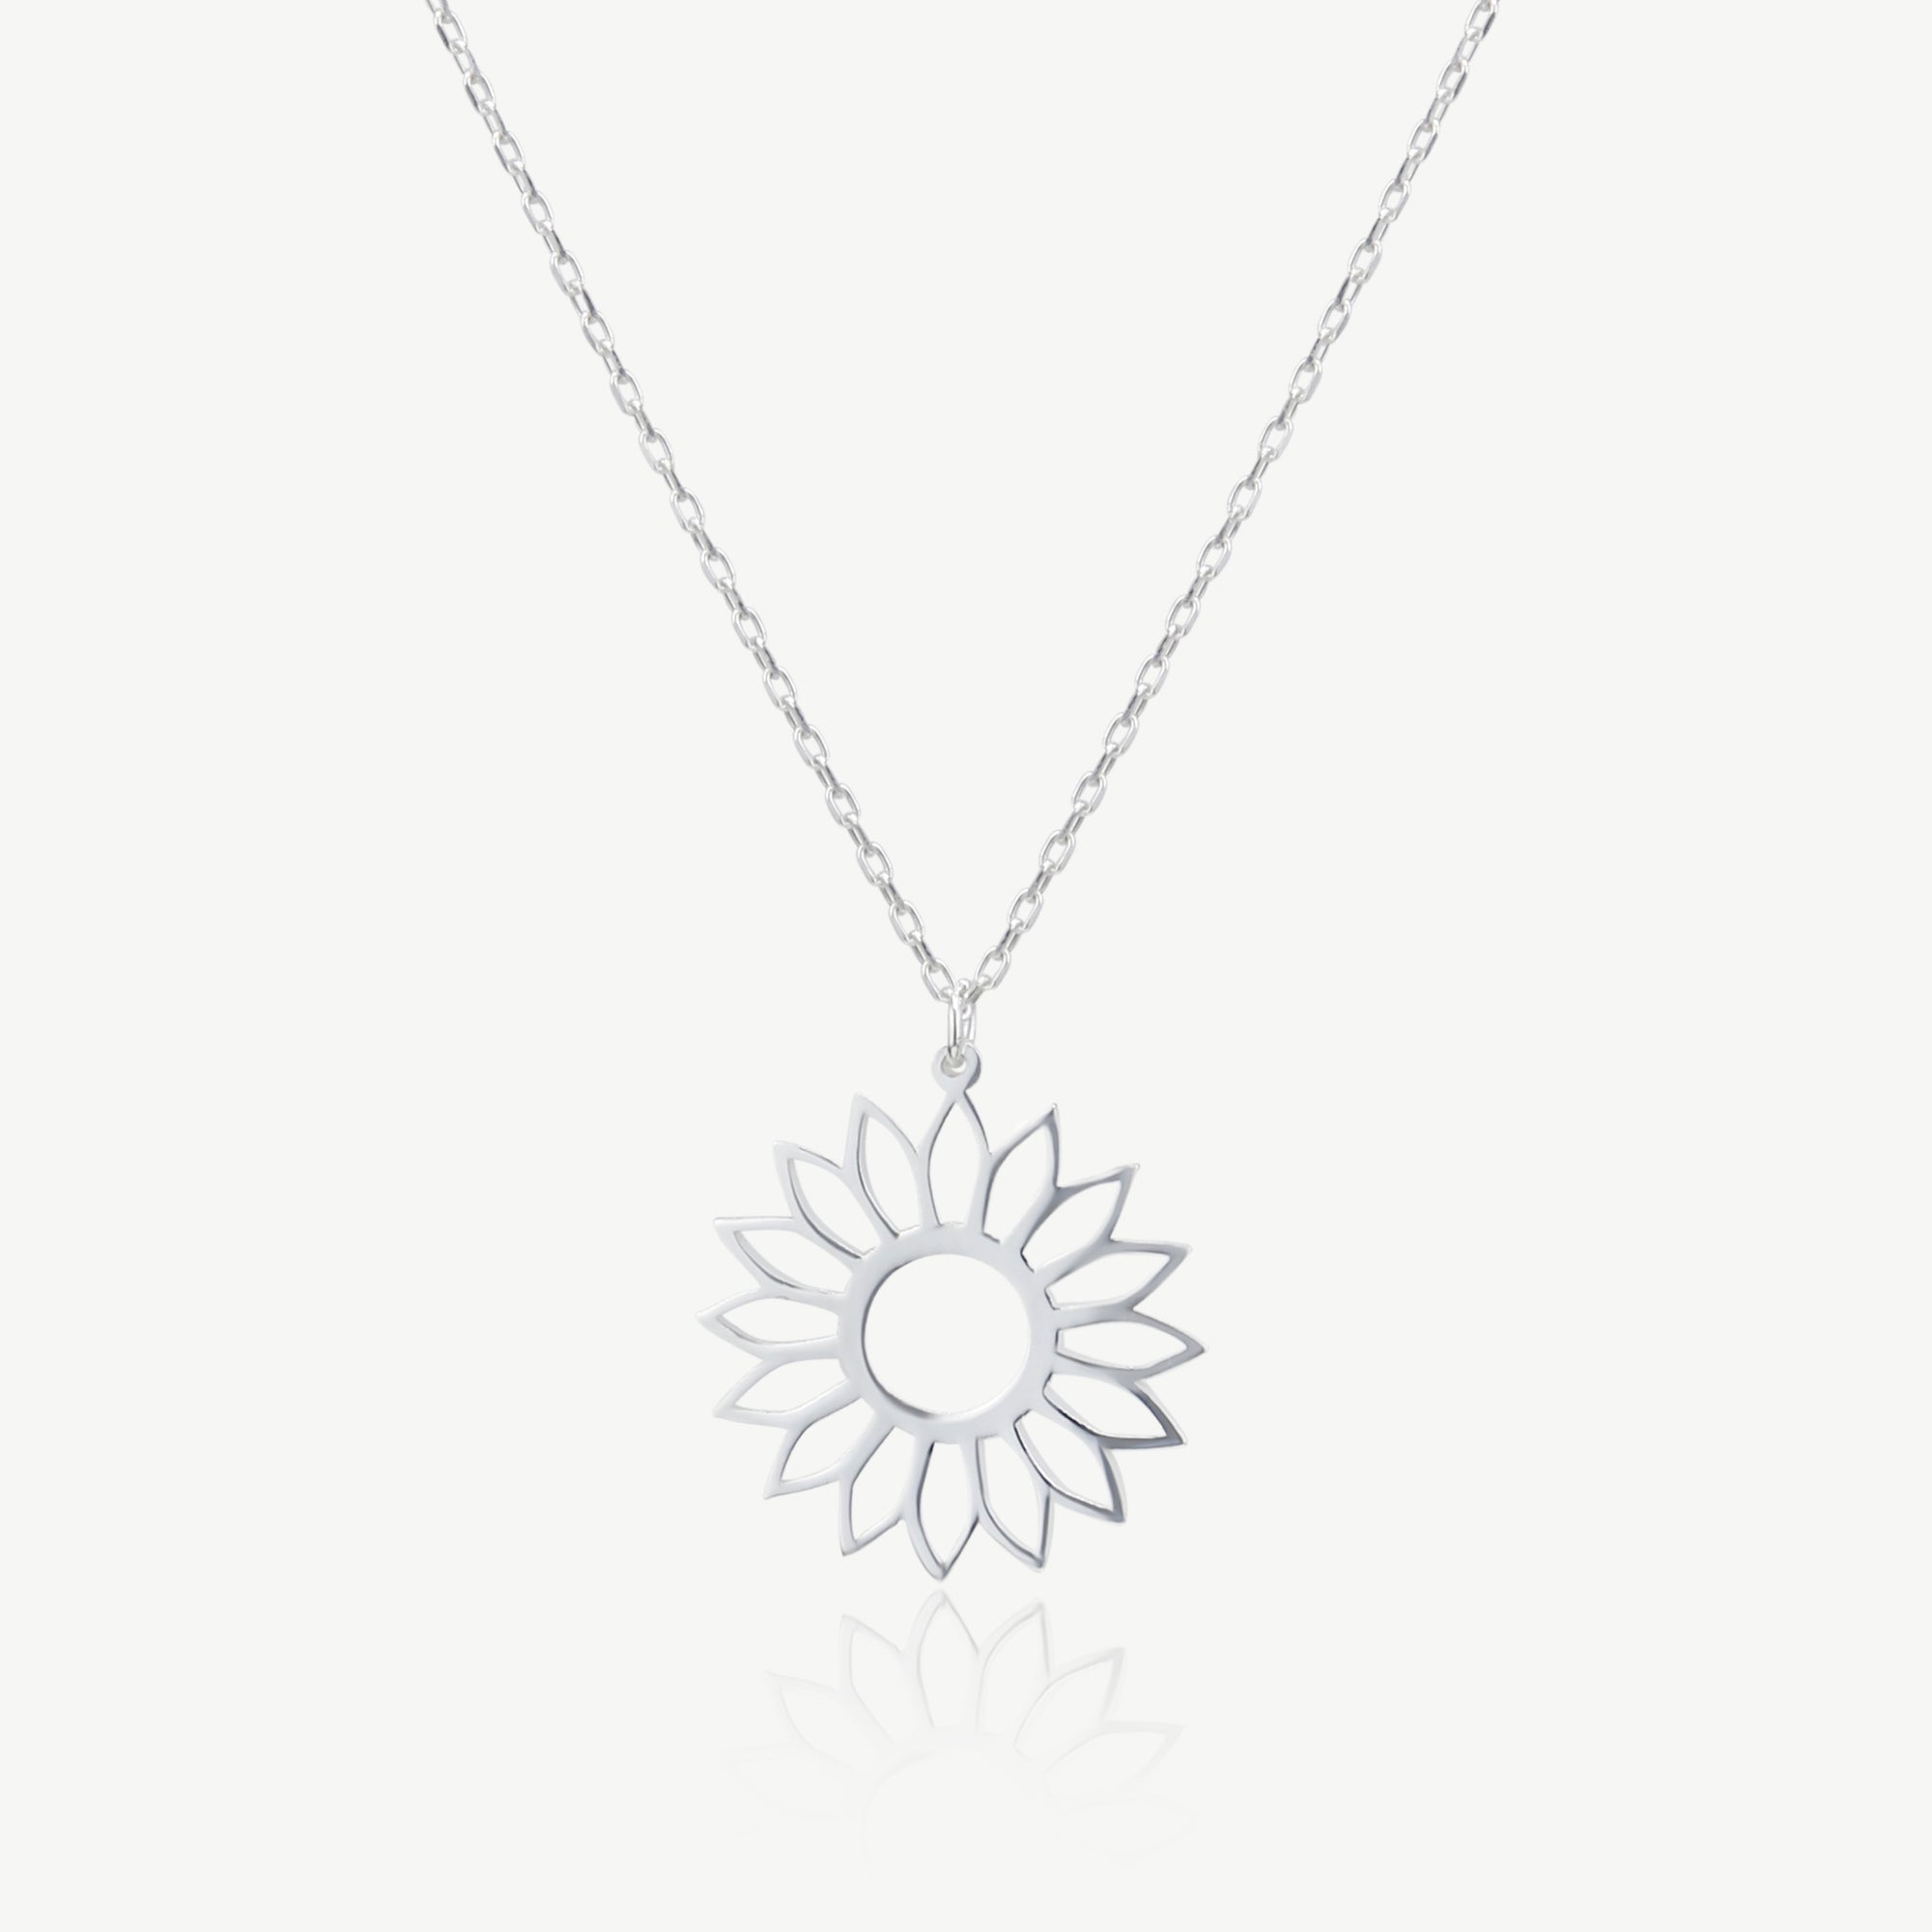 Silver Minimalist Sunflower Necklace